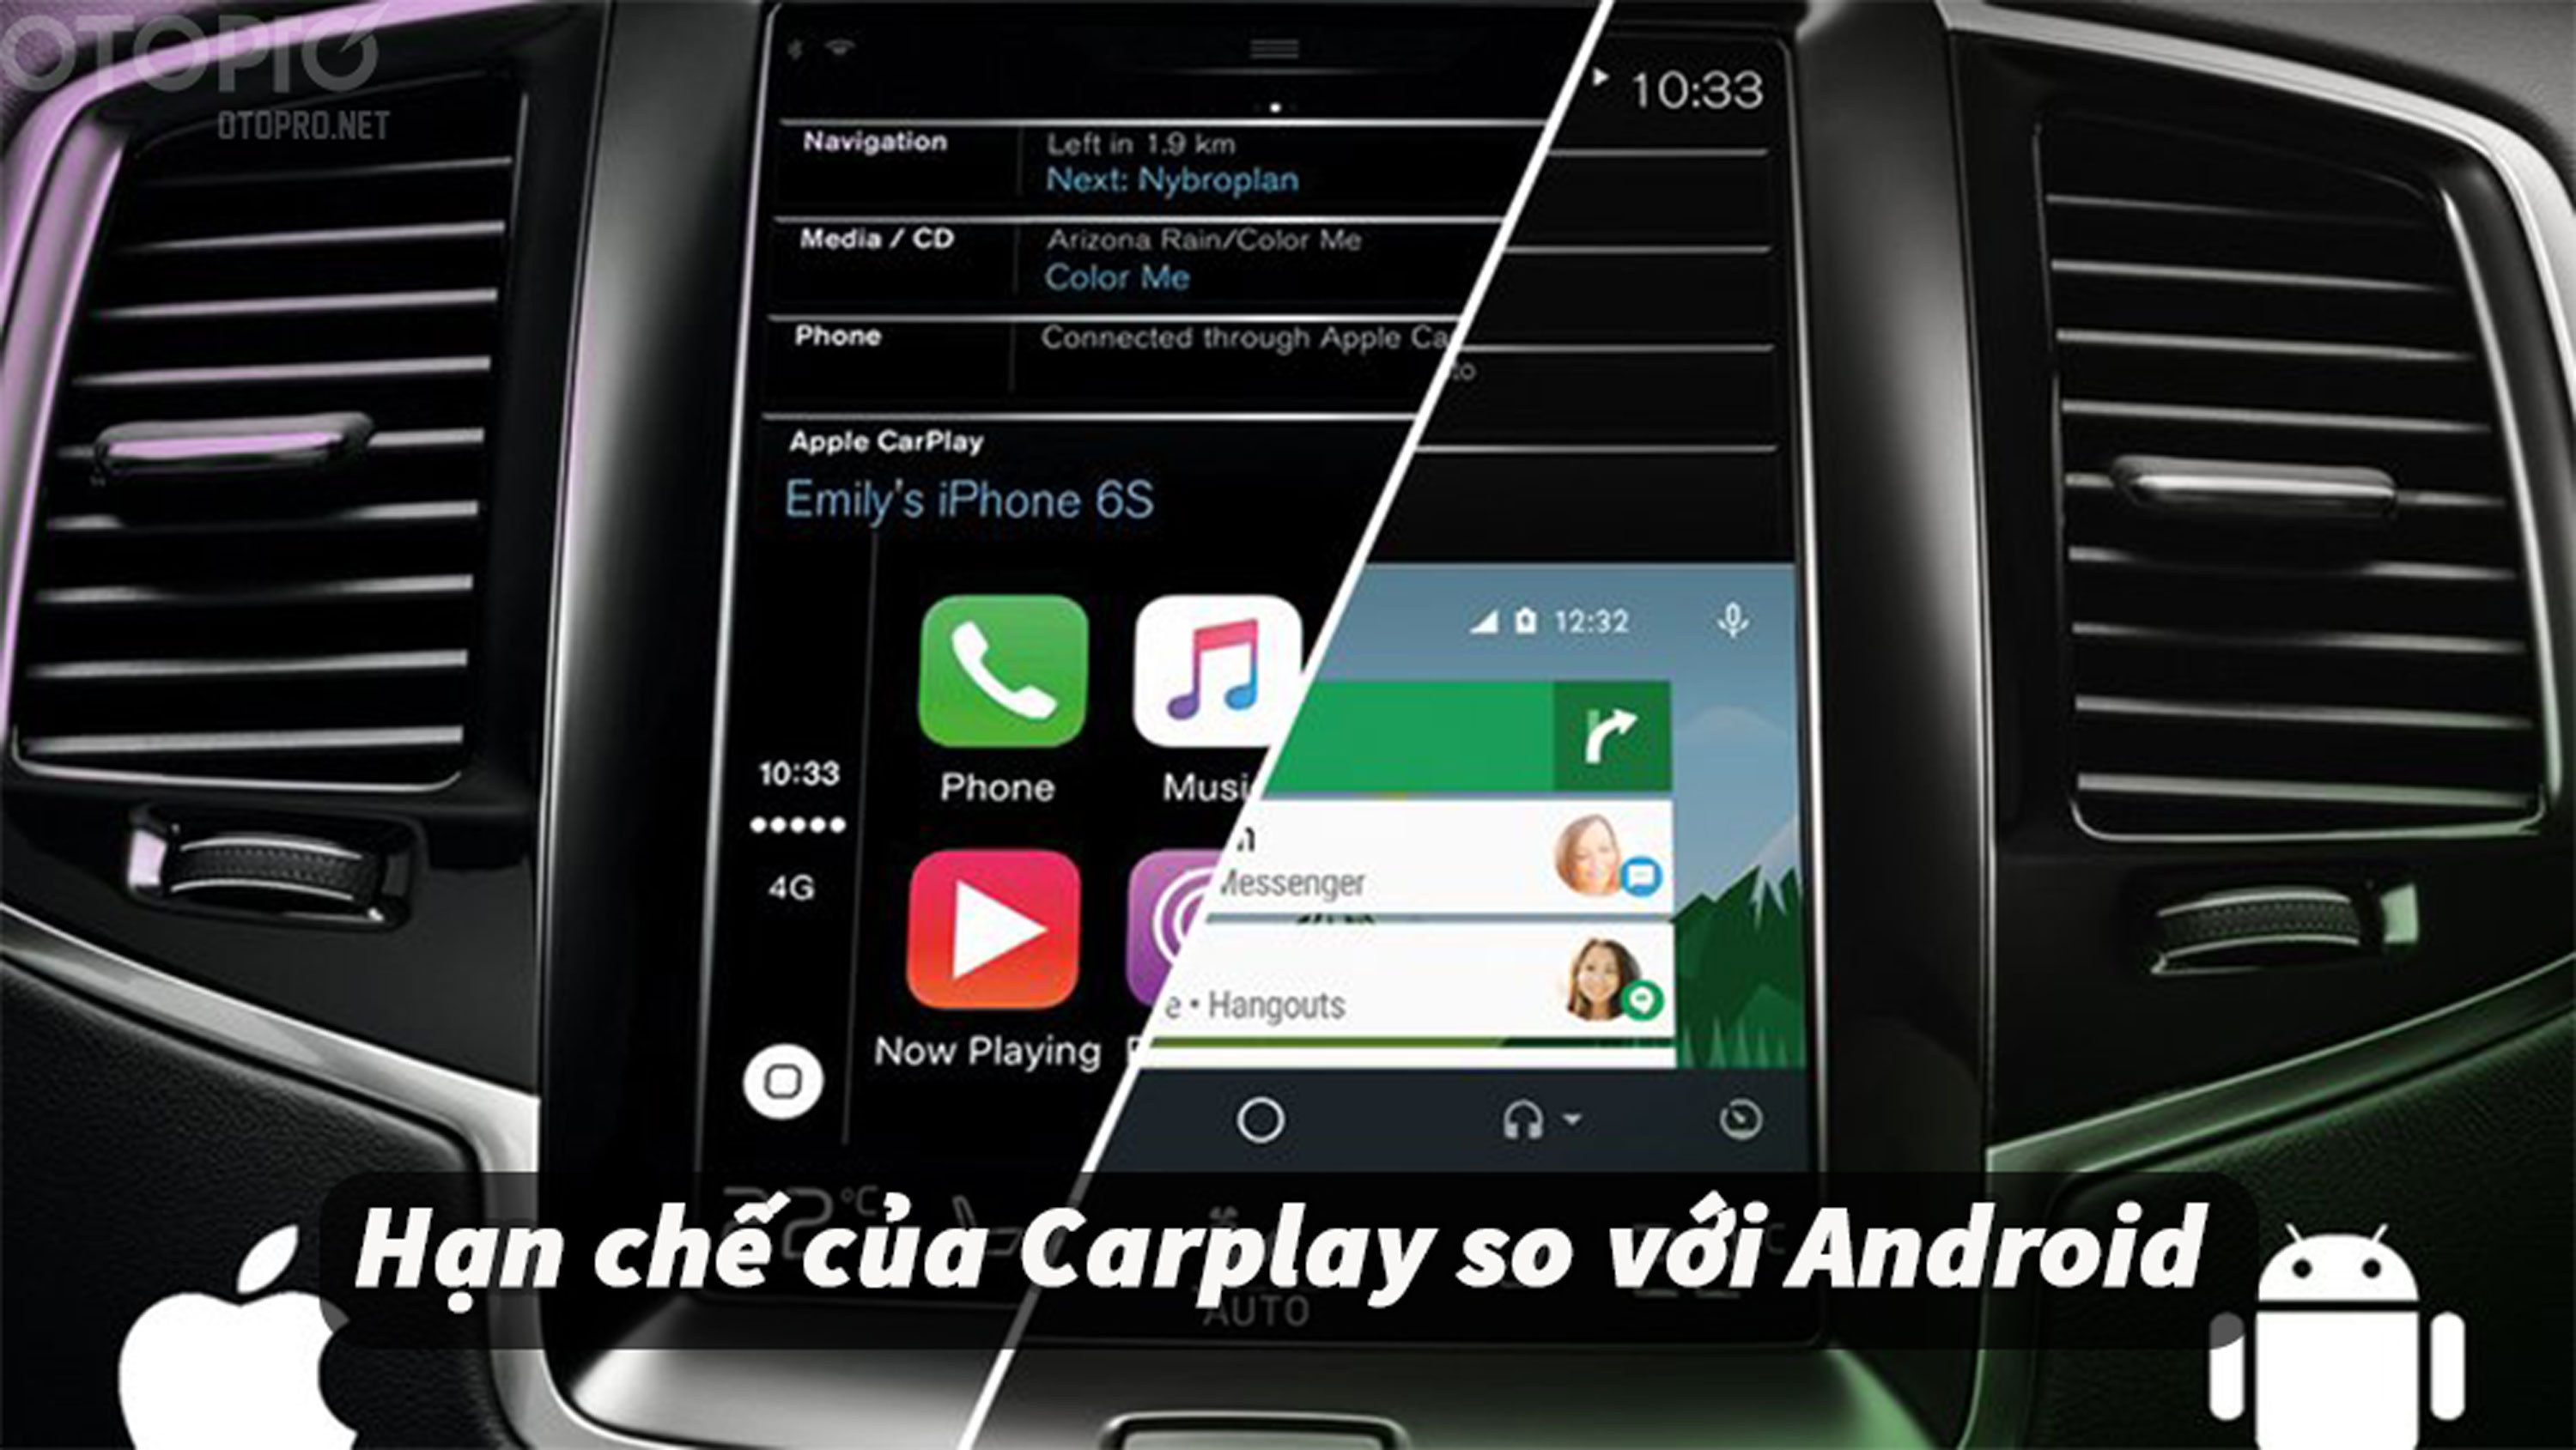 Android box cho ô tô